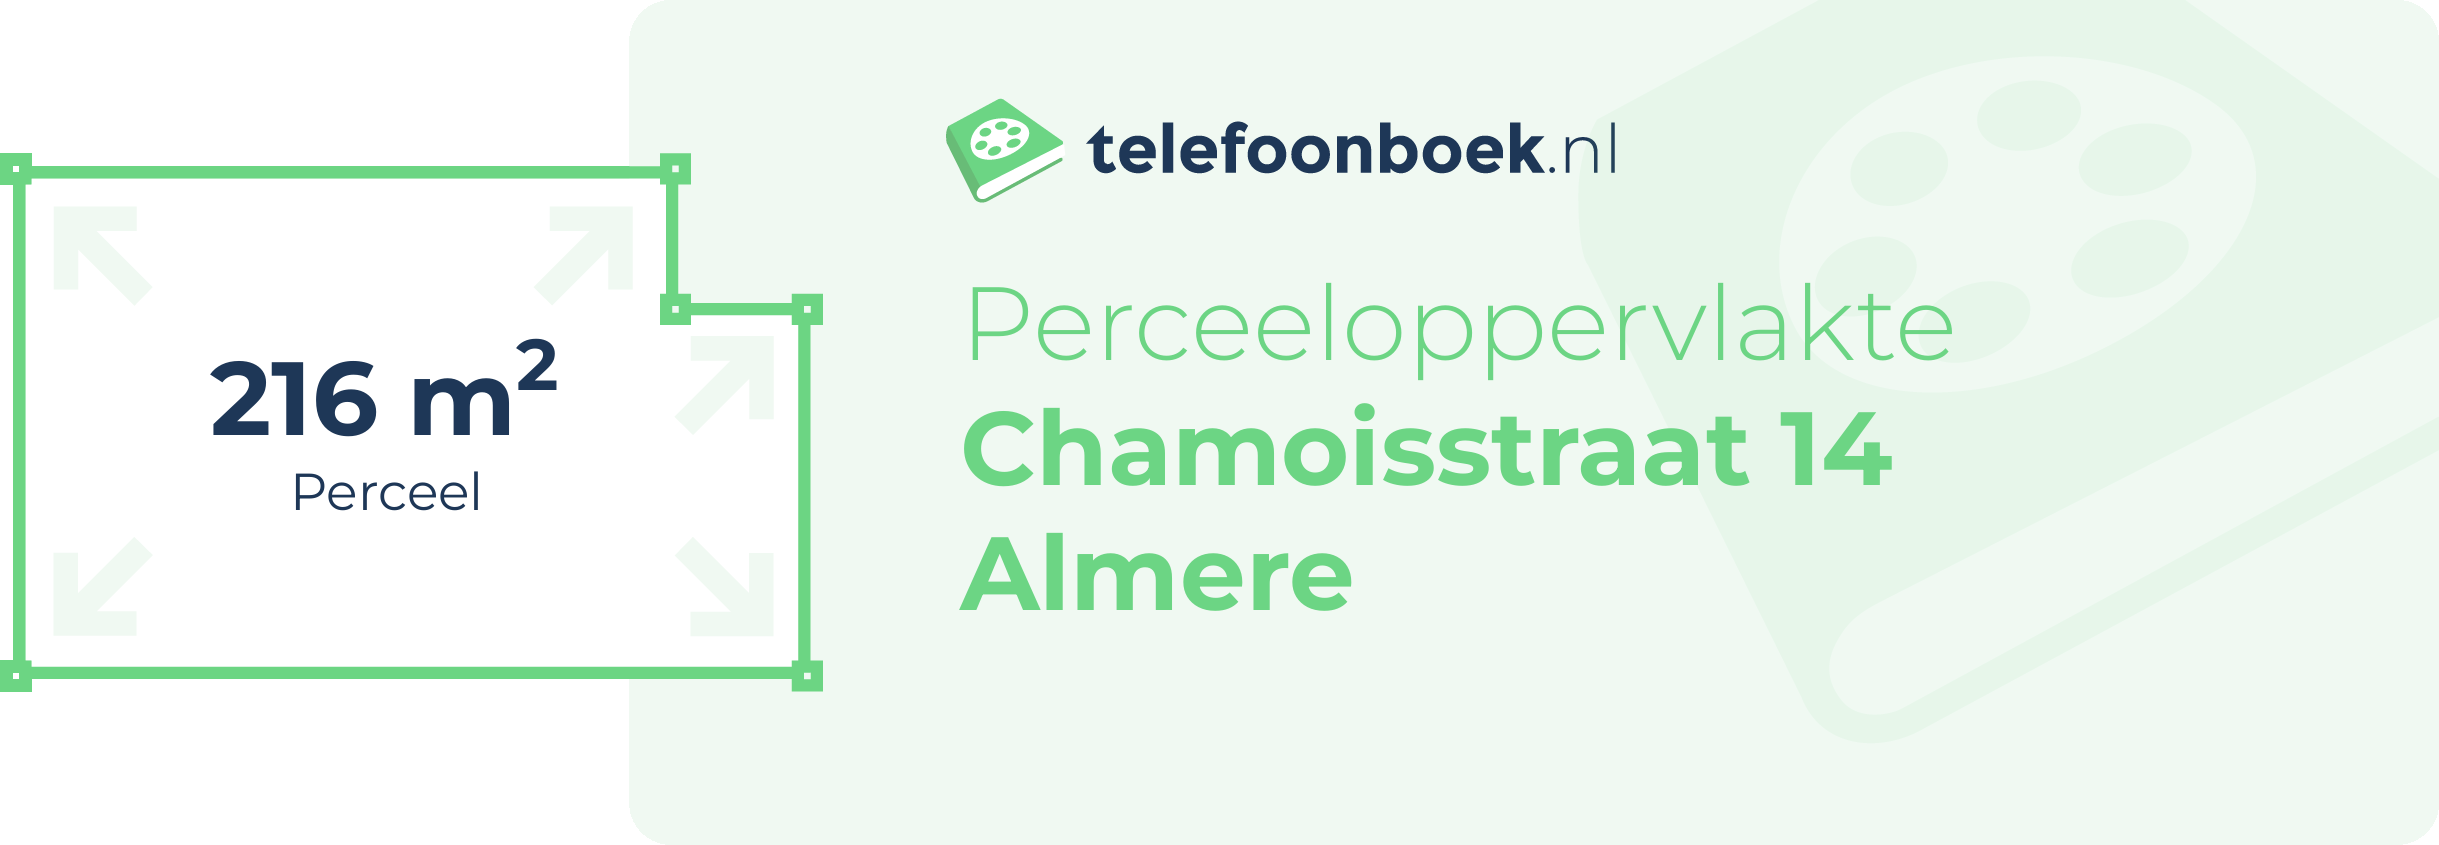 Perceeloppervlakte Chamoisstraat 14 Almere